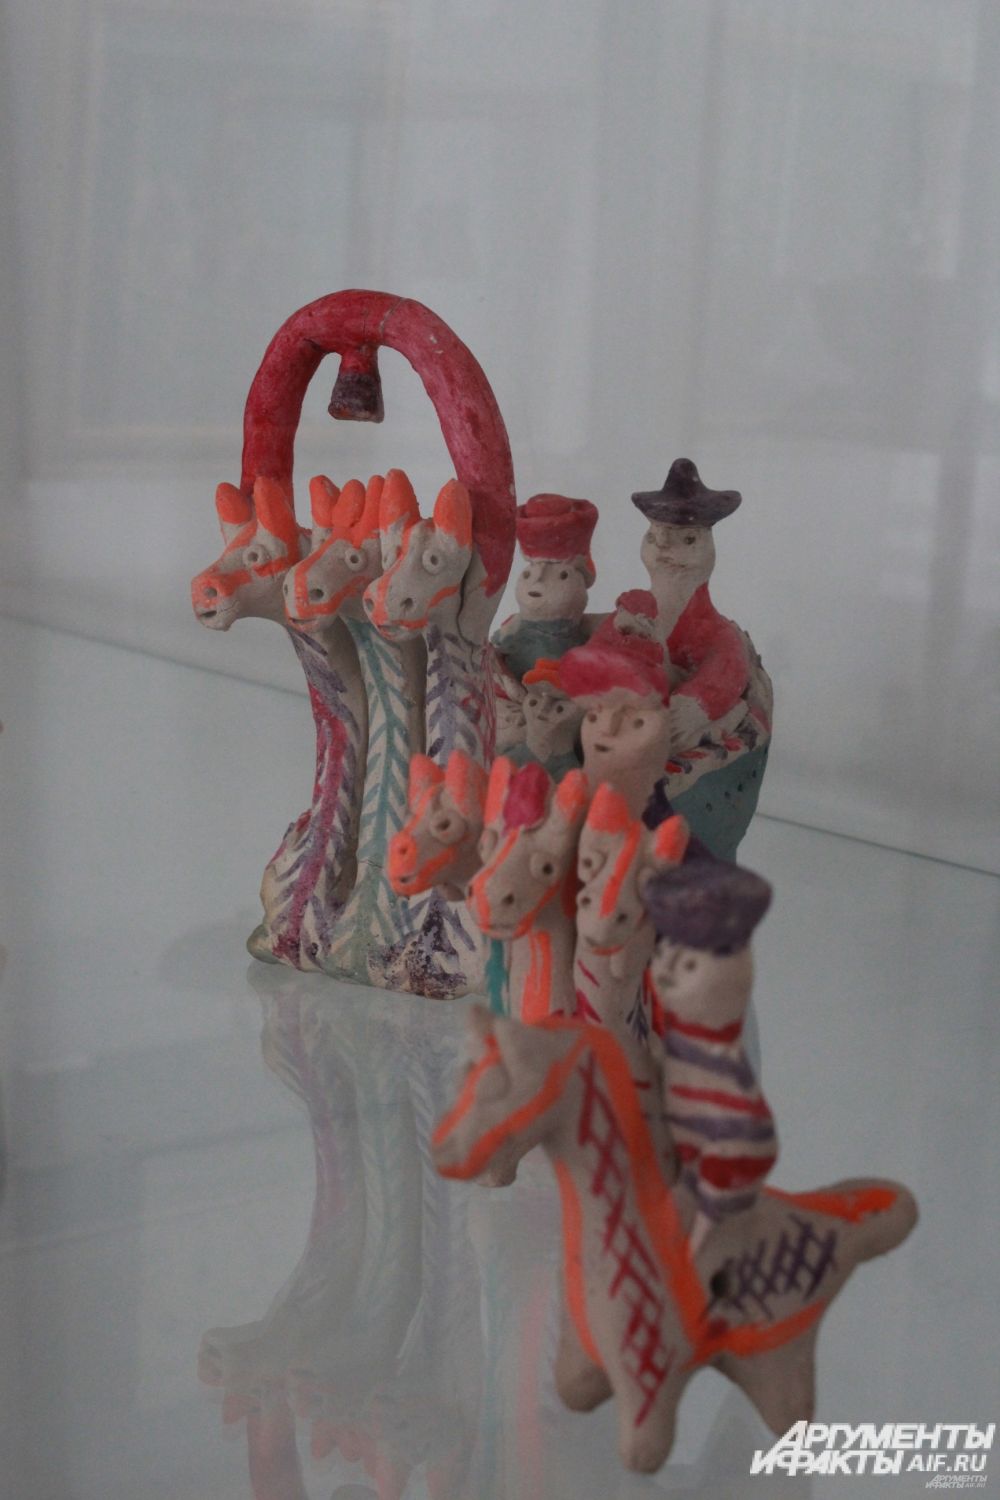 Добровская игрушка, Липецкая область, 20-й век, глина.